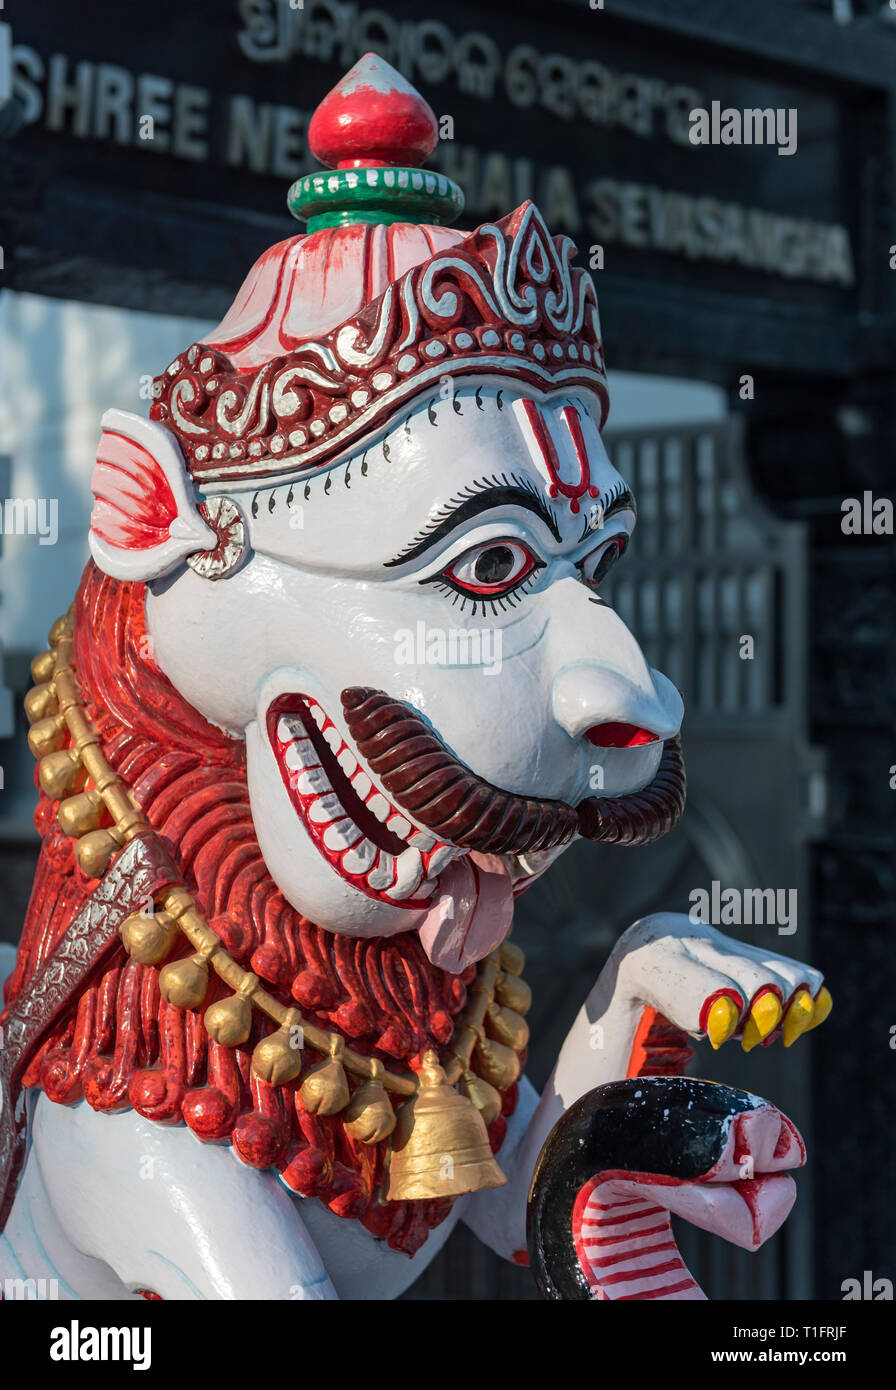 Deity statue at Shree Neelachala Seva Sangha Temple, Hauz Khas, South Delhi, India Stock Photo